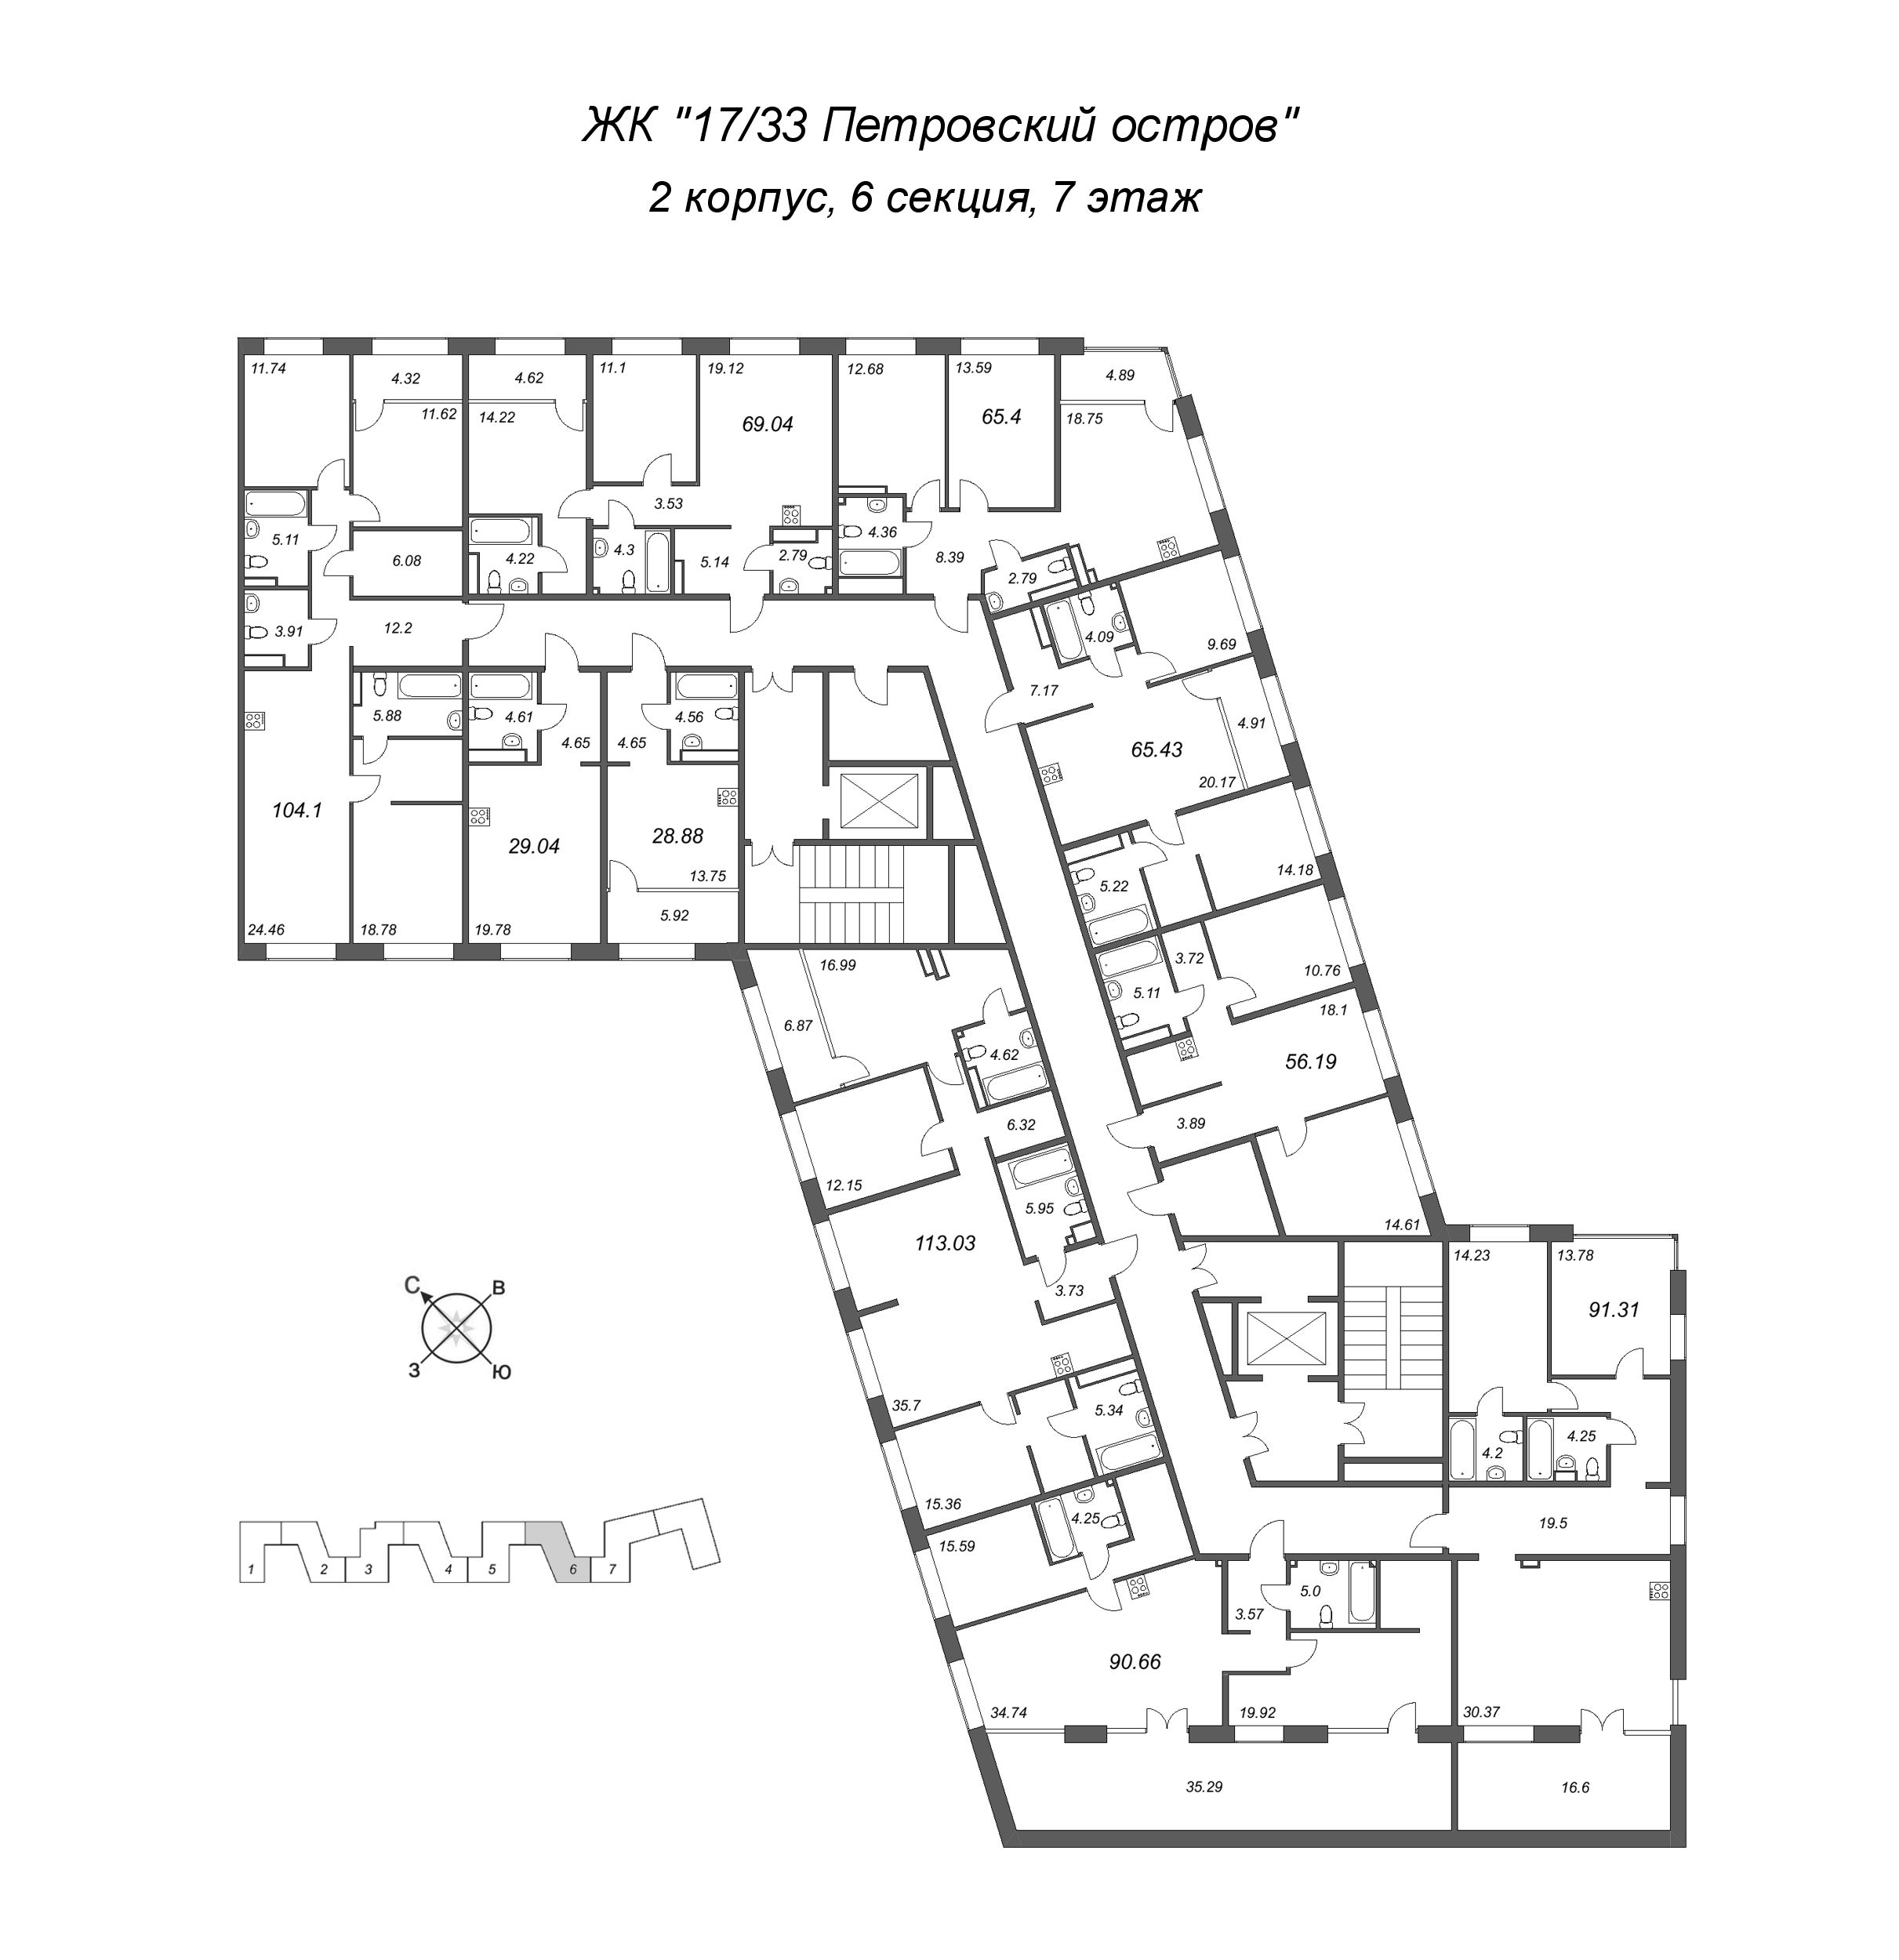 4-комнатная (Евро) квартира, 113.03 м² в ЖК "17/33 Петровский остров" - планировка этажа